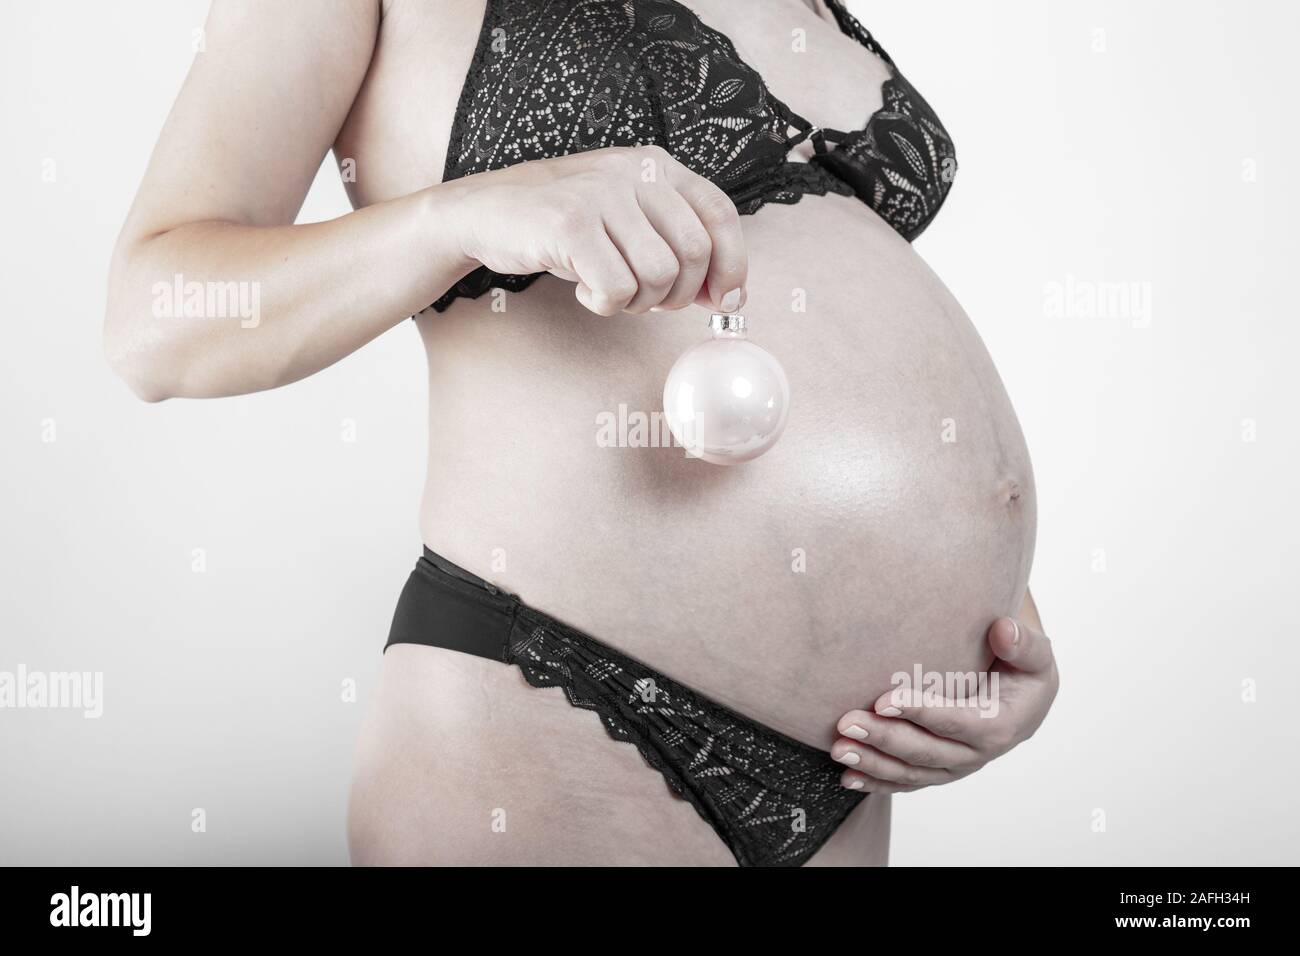 Nahaufnahme von einem niedlichen schwangeren Bauch Stockfoto